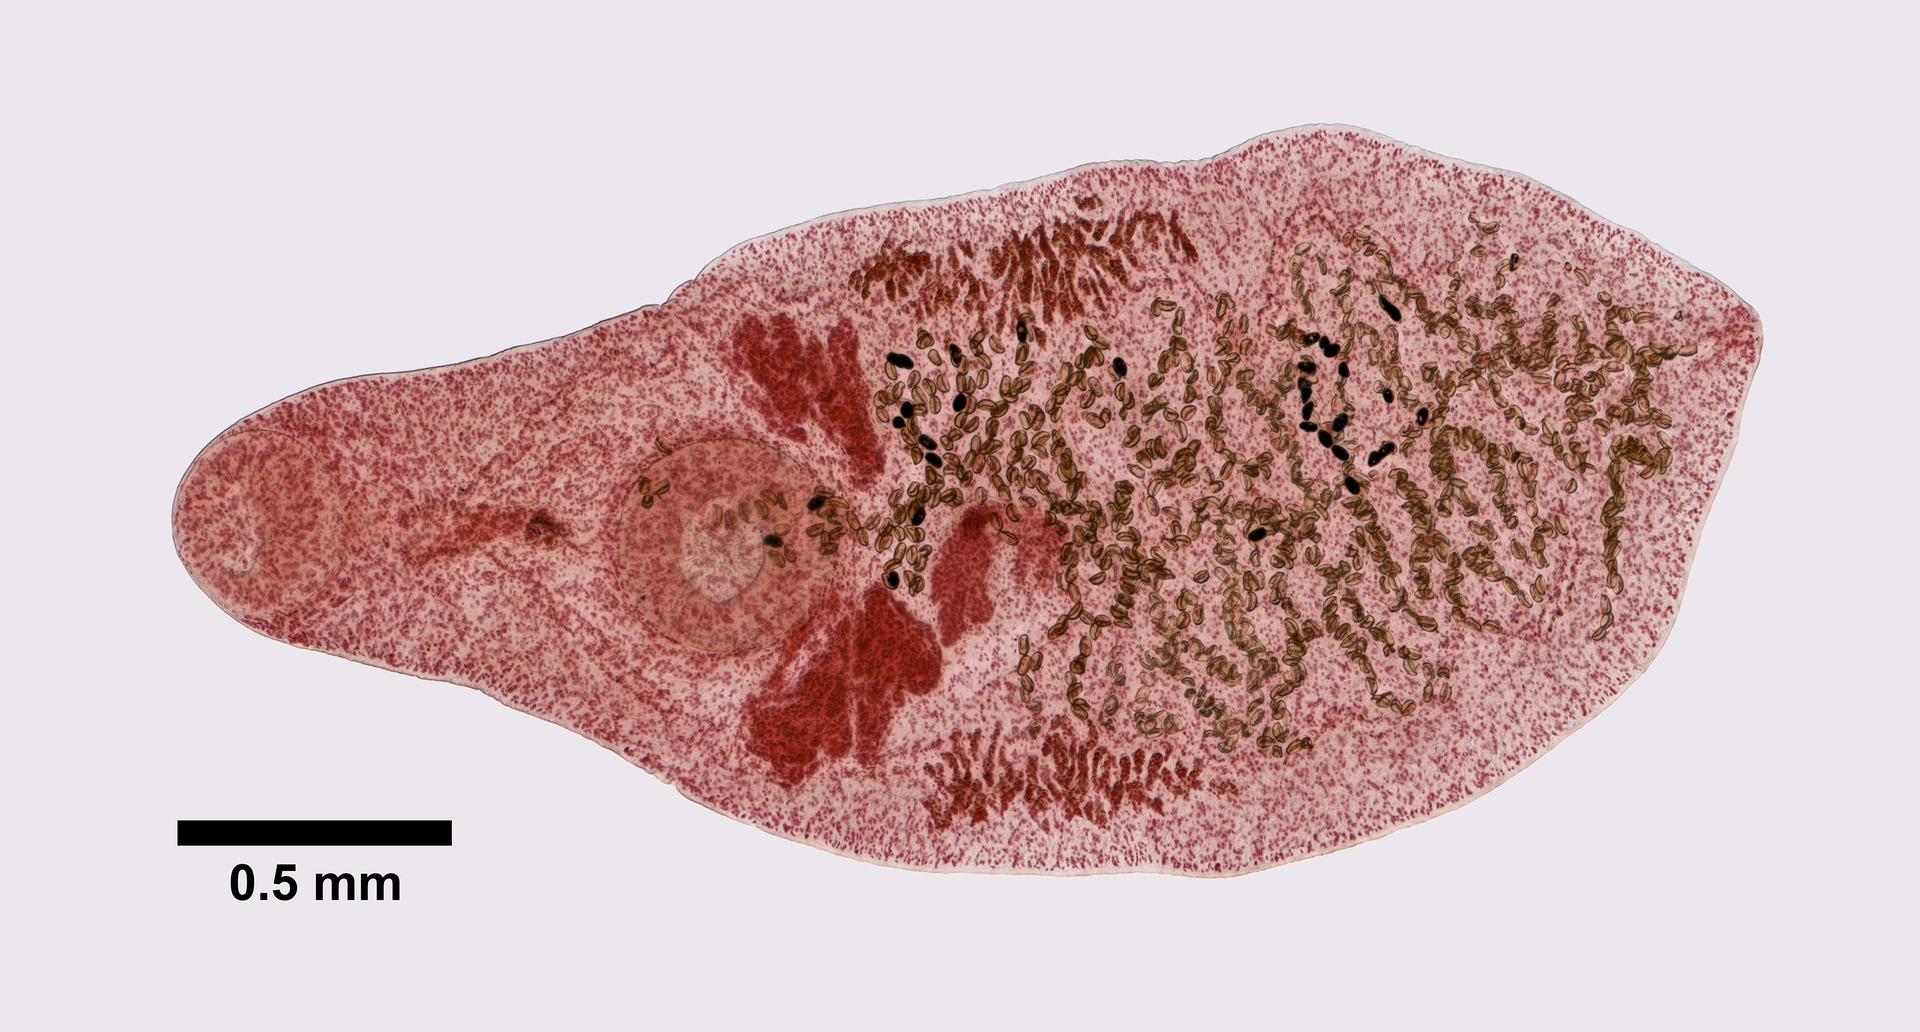 Platynosomum image